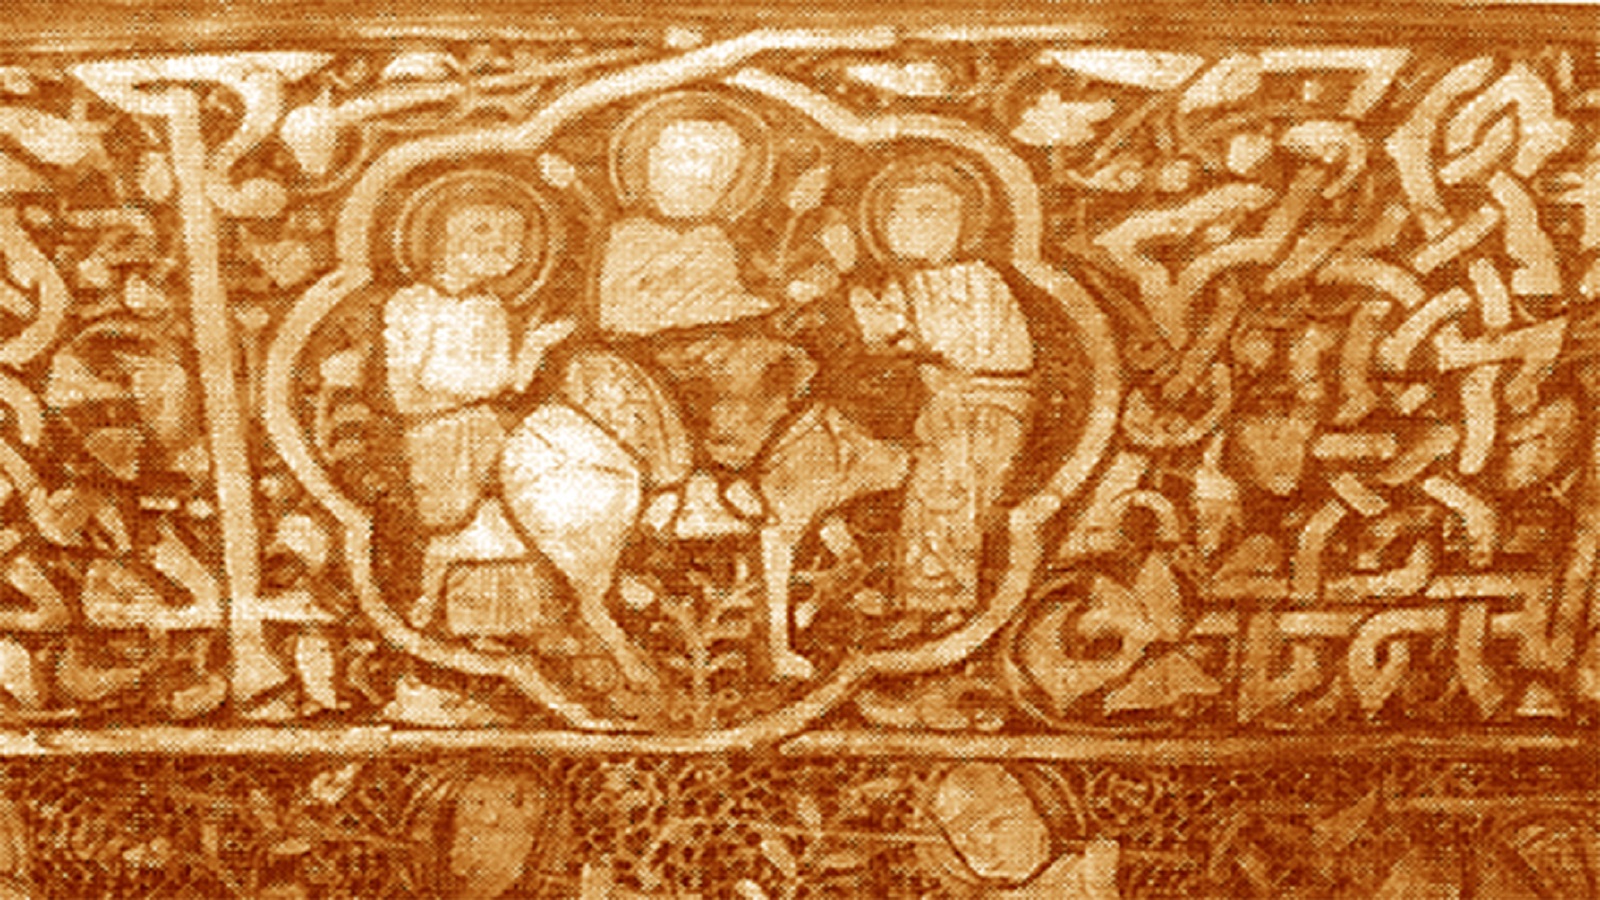 الشعانين، تفصيل، حوض نجم الدين أيوب، سوريا، القرن الثالث عشر، "غاليري فرير"، واشنطن. 